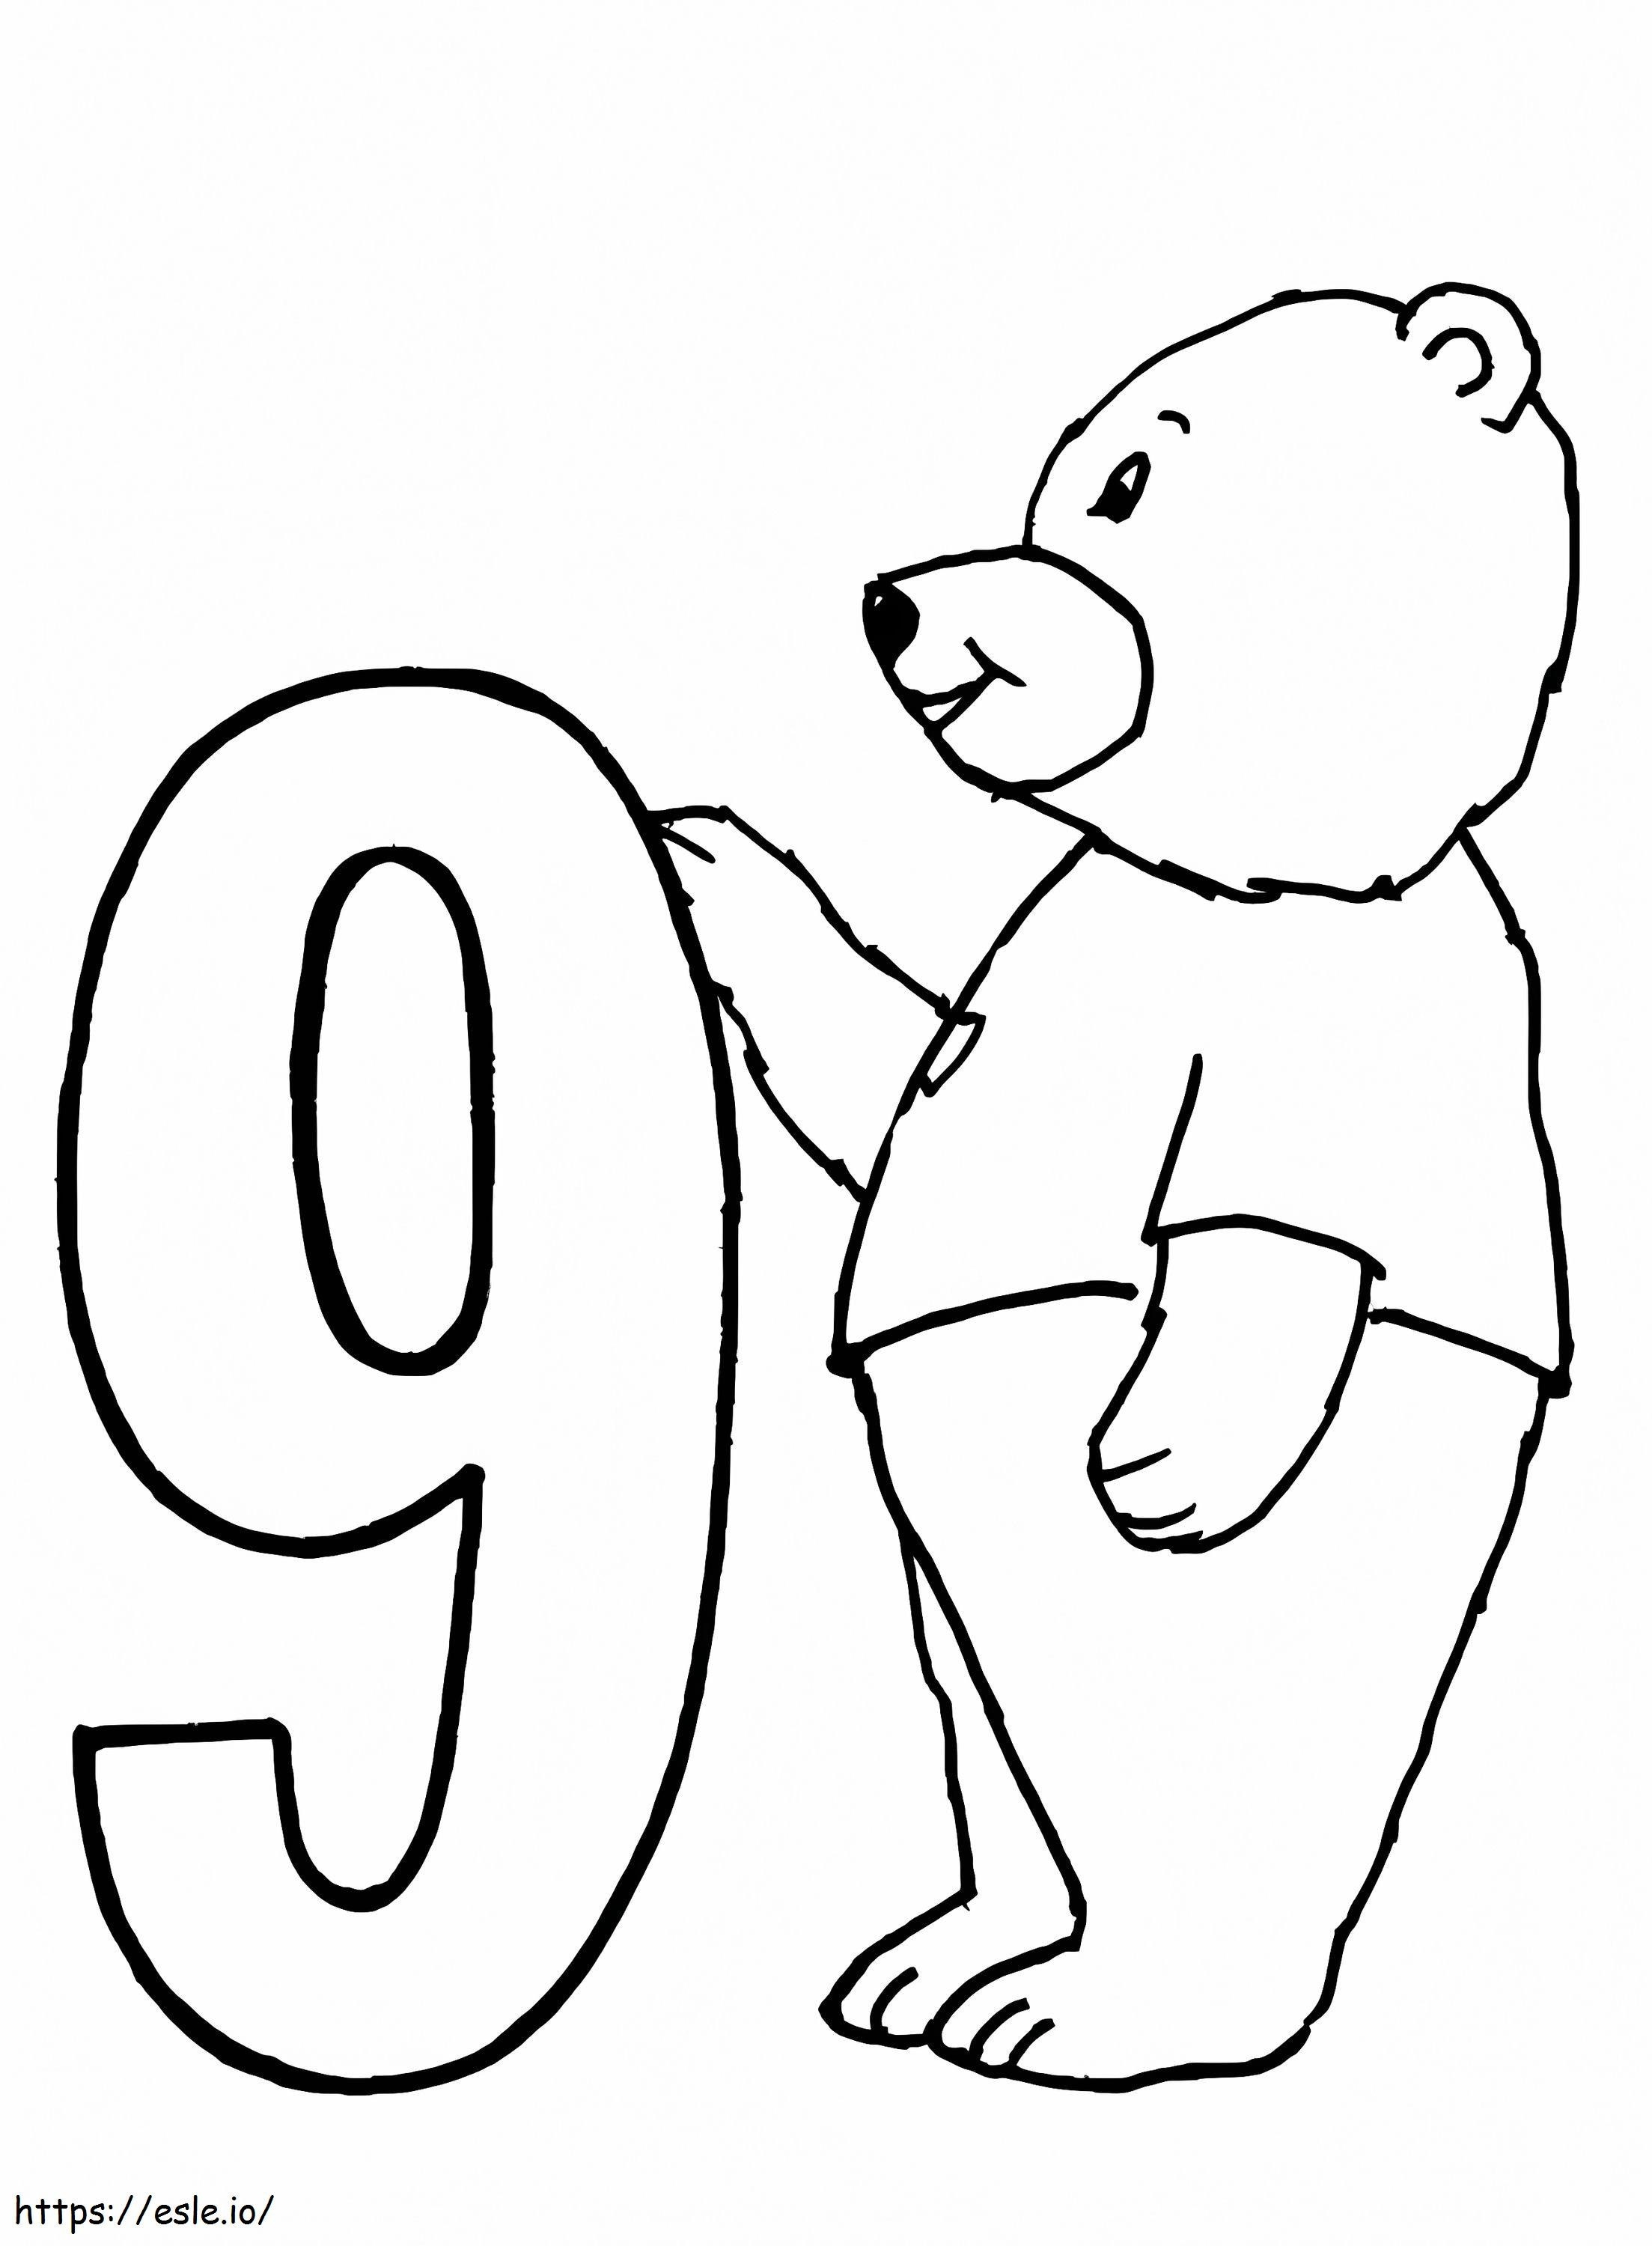 Niedźwiedź i numer 9 kolorowanka